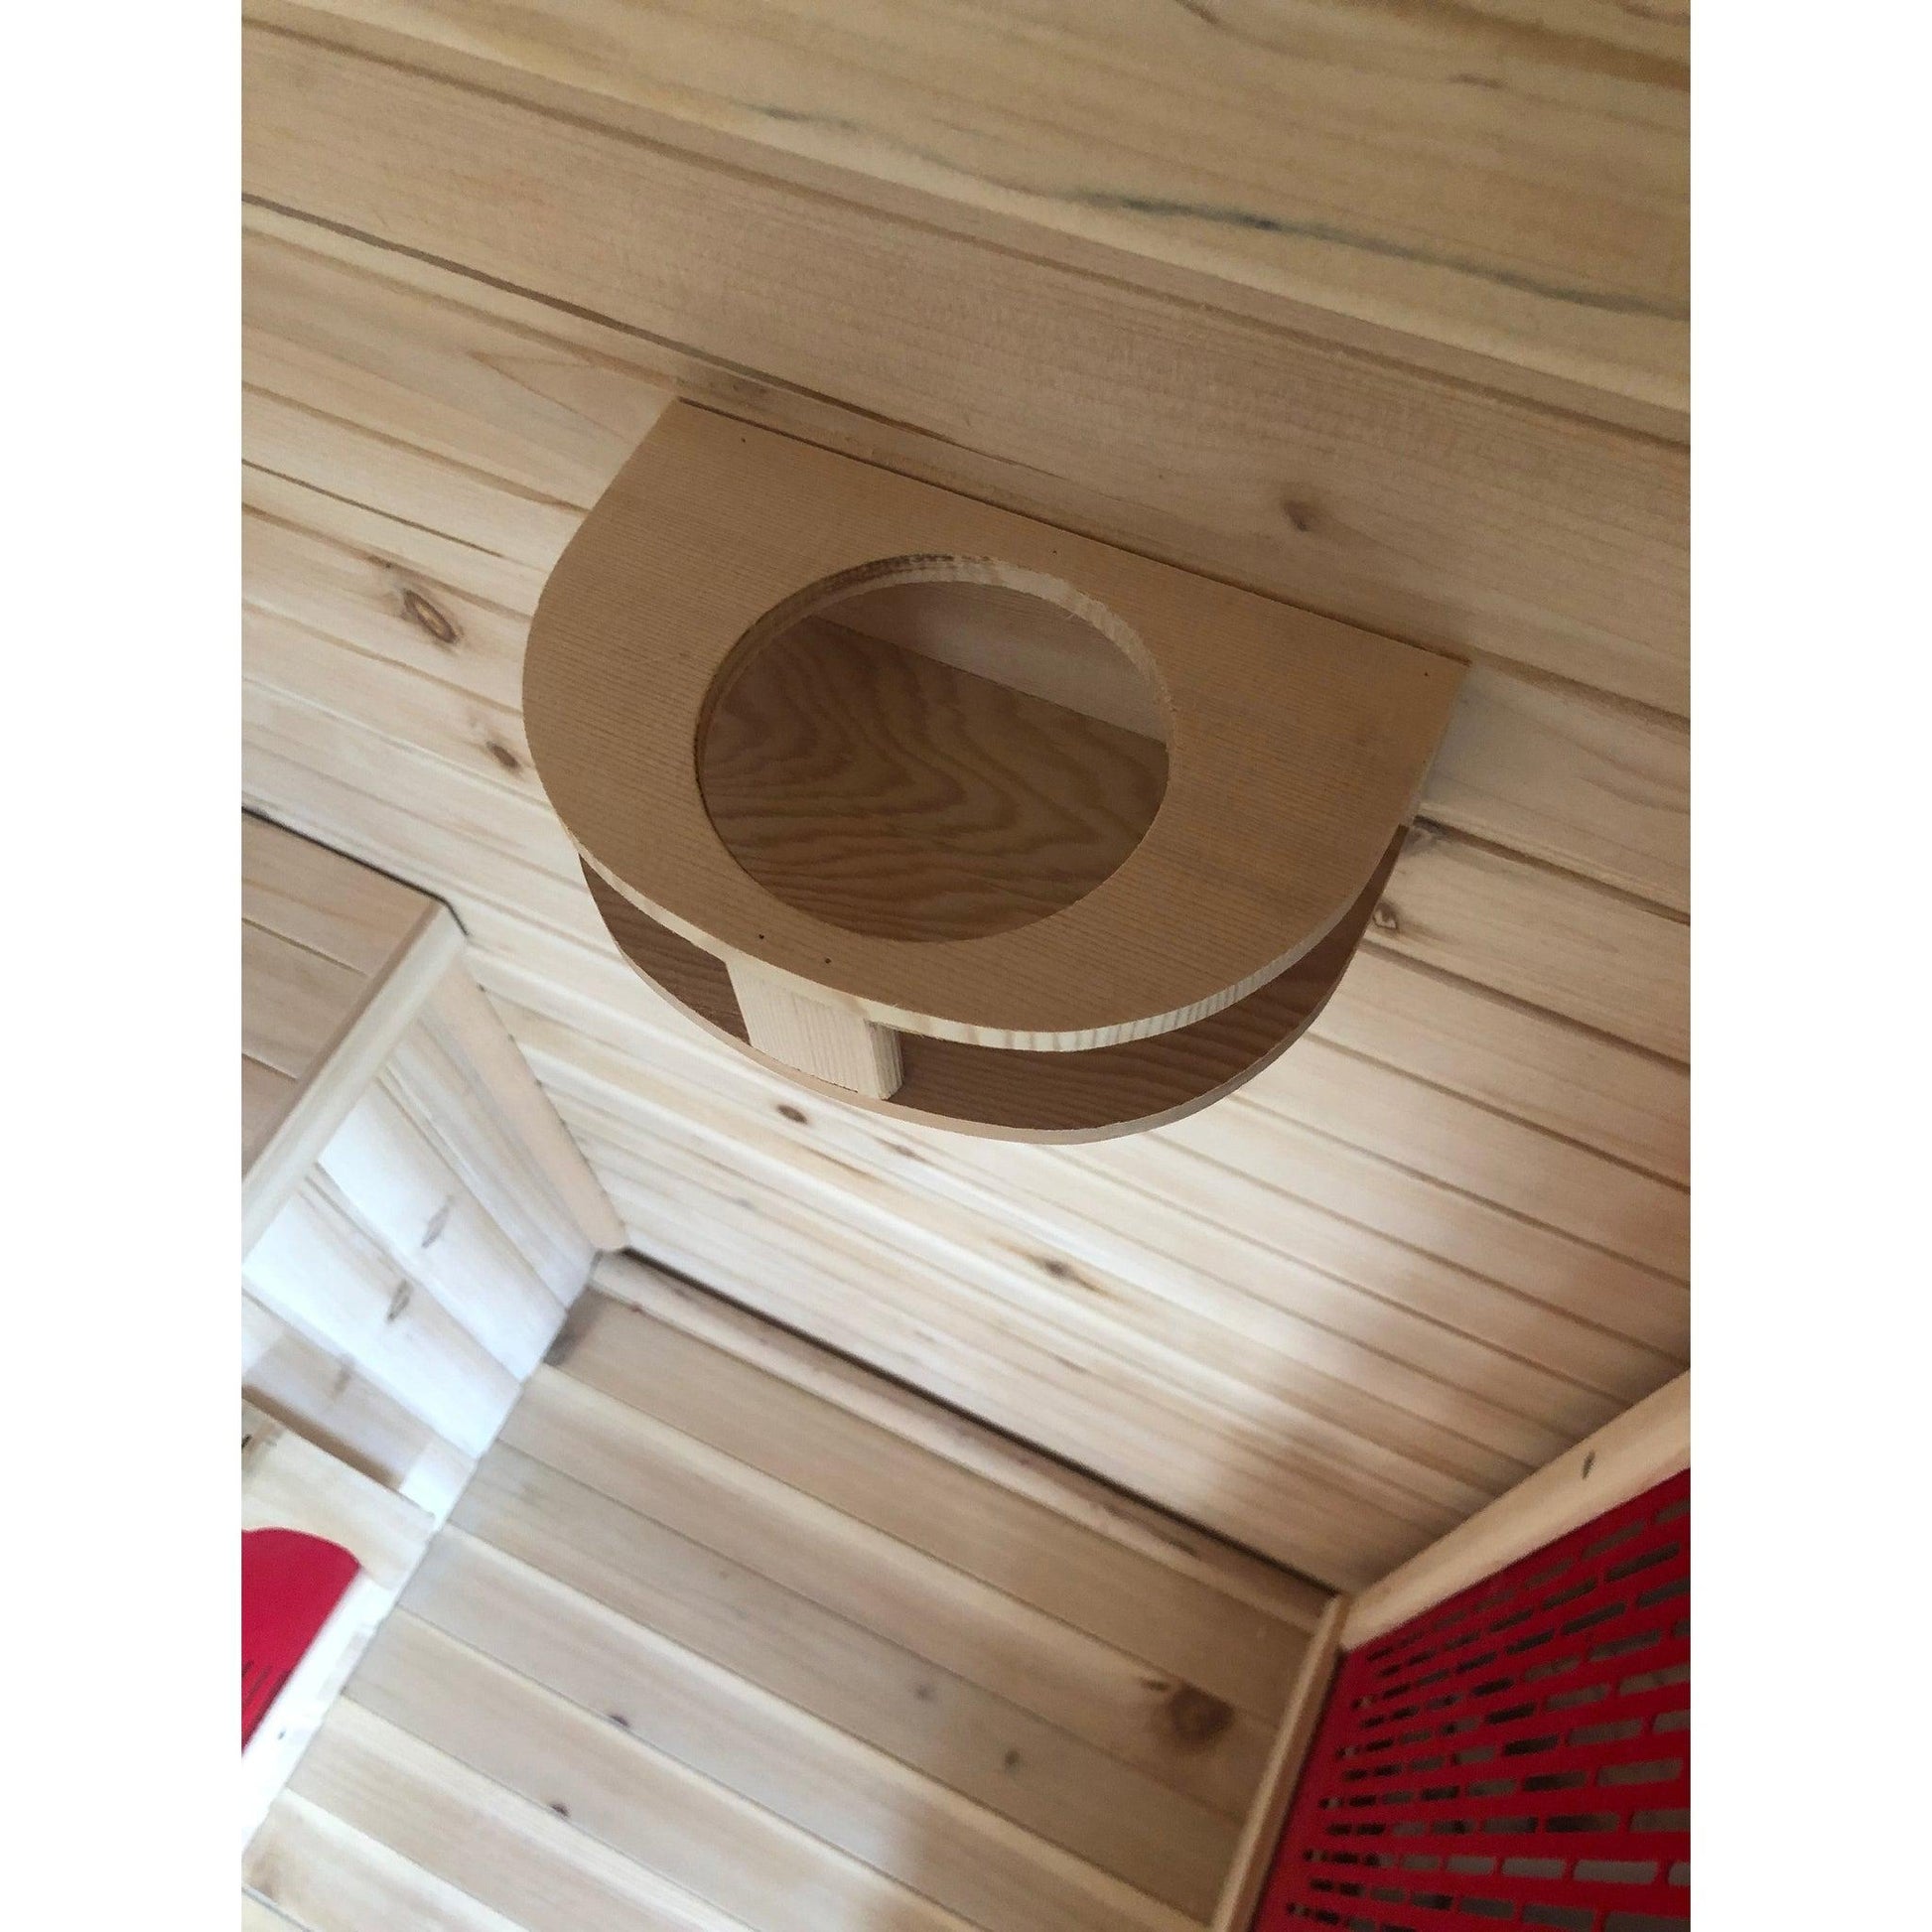 Infrared sauna in Hemlock wood GRENADA 2 3EXX0507